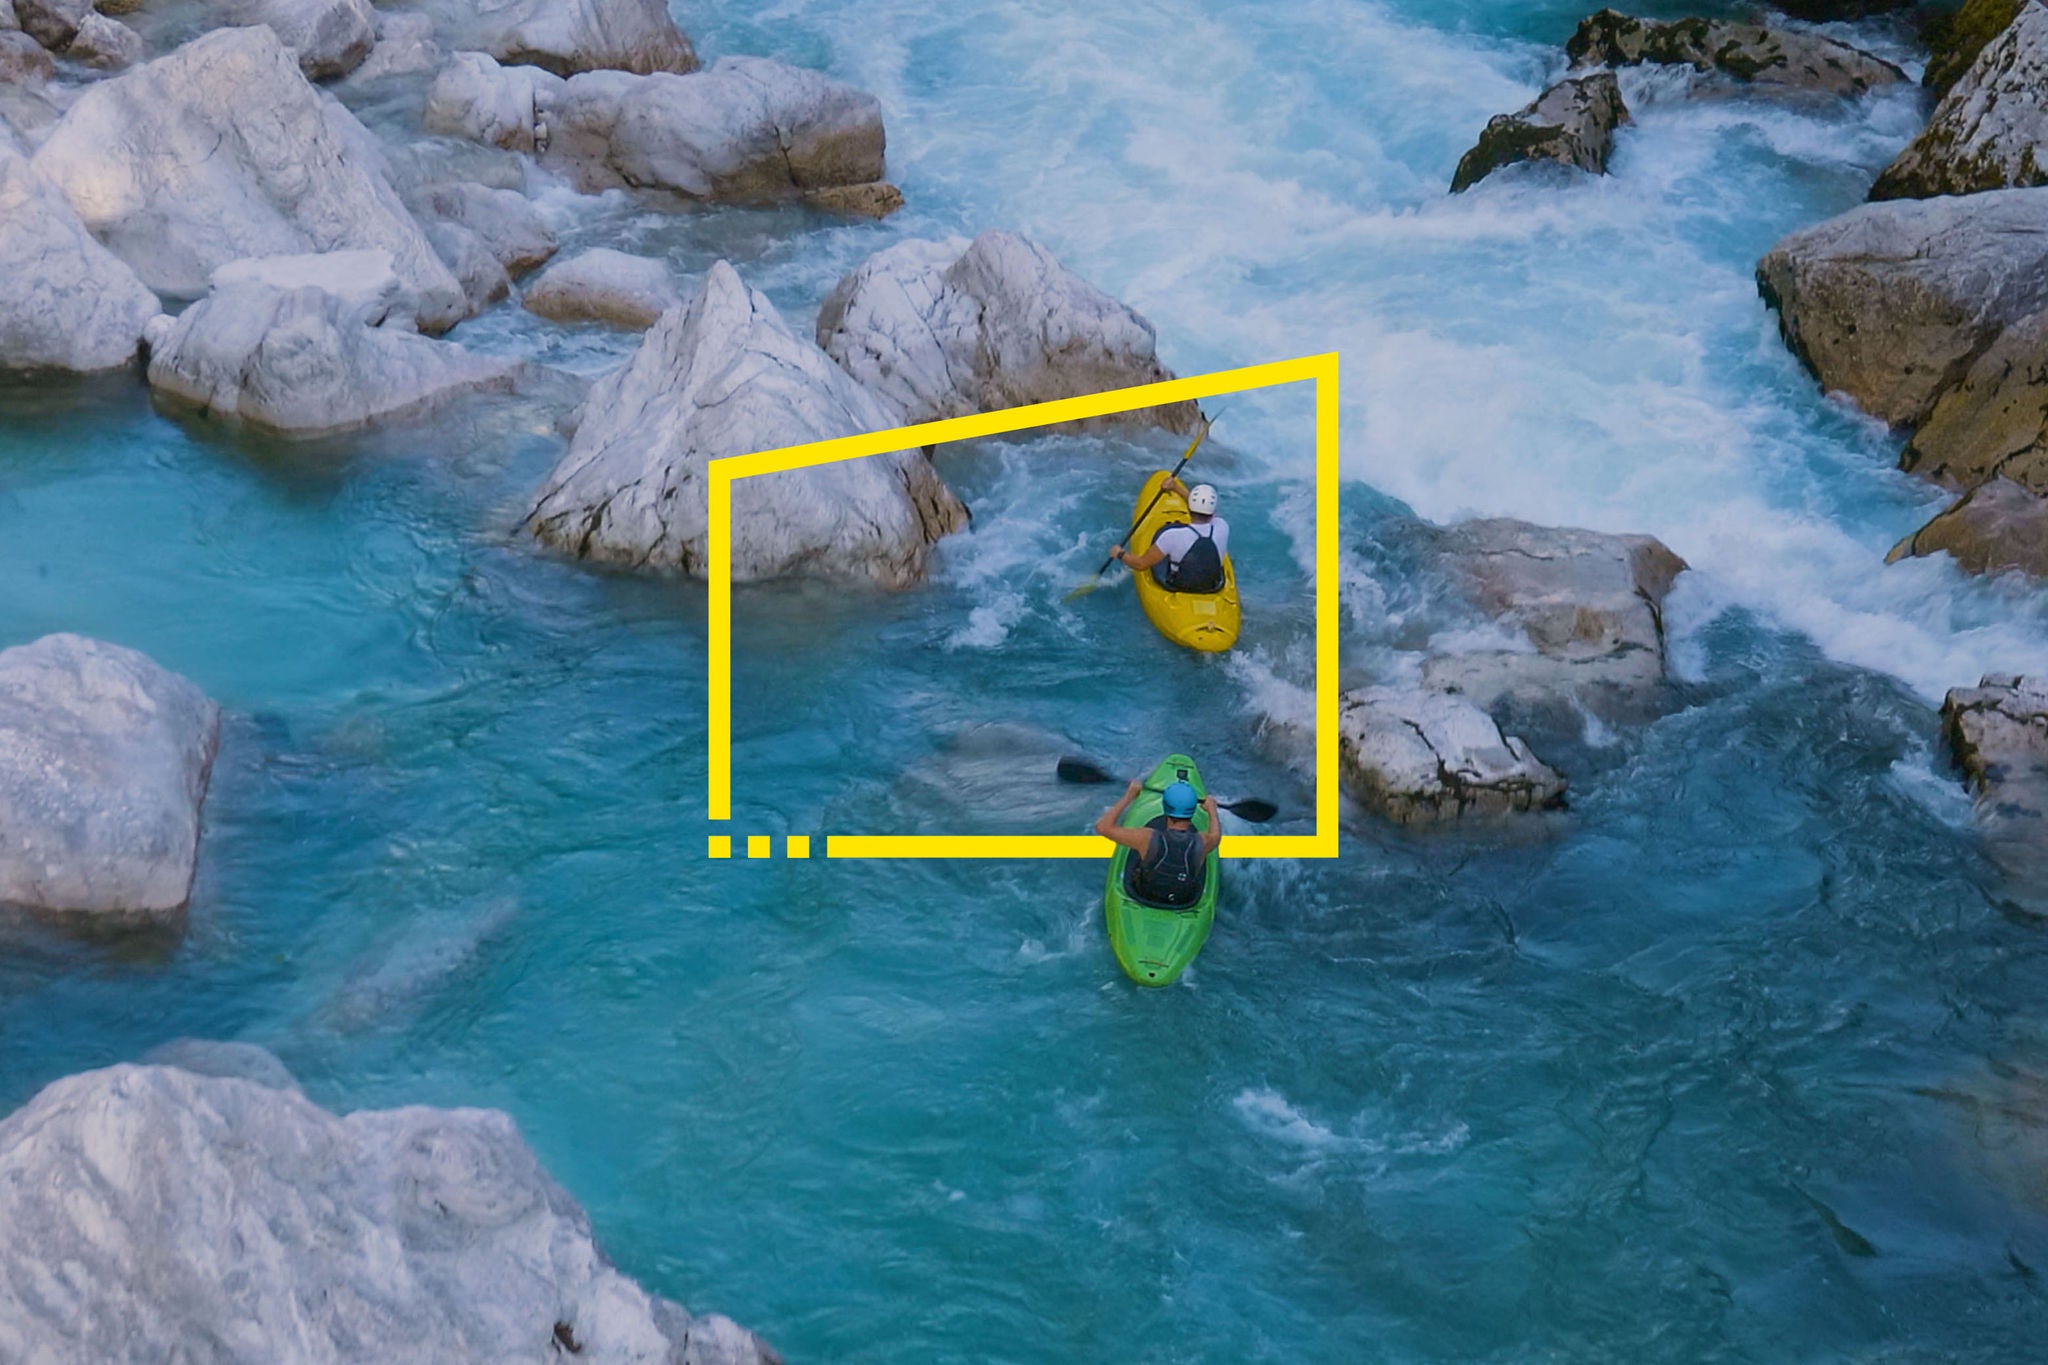 Two men kayaking through a rough river